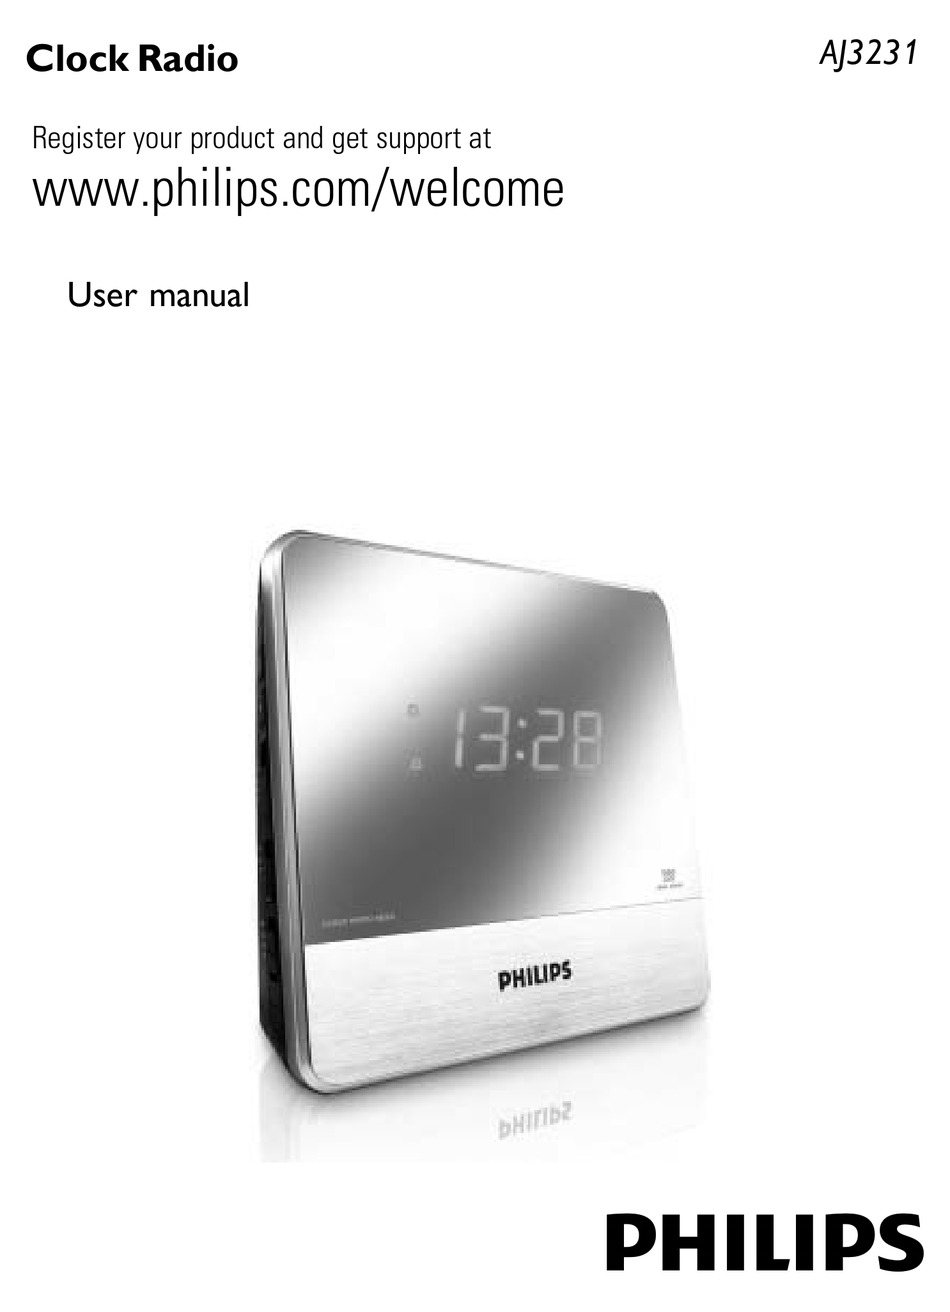 Руководство филипс. Philips Clock Radio aj3231. Philips AJ 3231. Philips aj3231/12. Радиоприемник Philips aj3231 12.